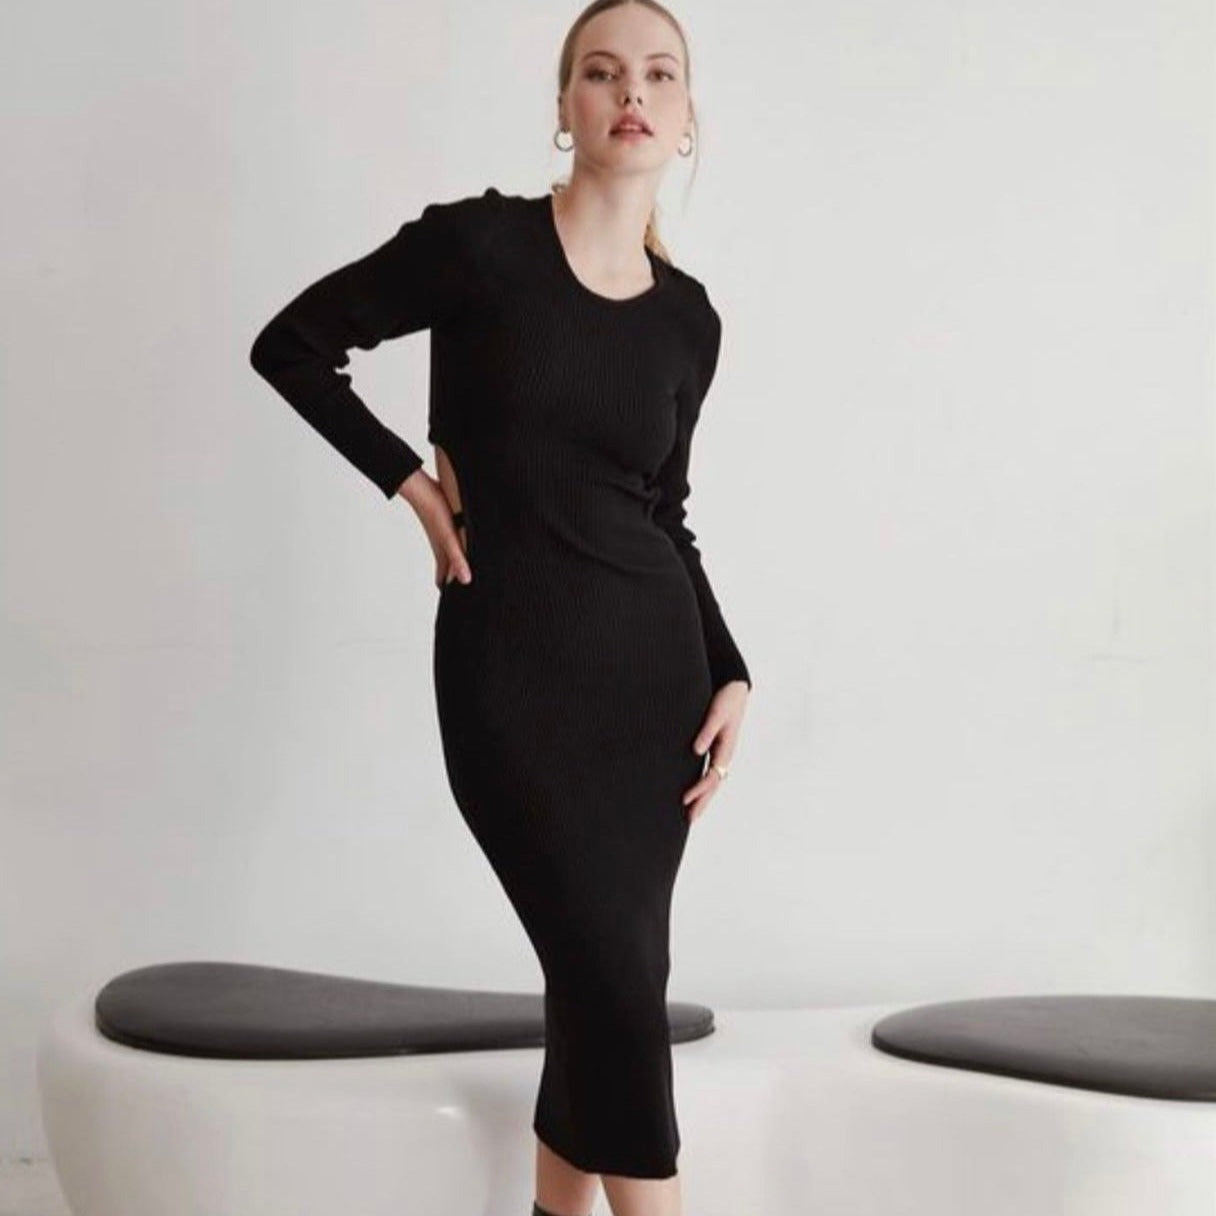 Дамска рокля KASSIDI  https://bvseductive.com/products/дамска-рокля-kassidi-1  100 % памук ежедневна рокля в черен цвят модел по тялото, описващ фигурата от приятна и мека на допир материя чудесен избор за красива, женствена визия